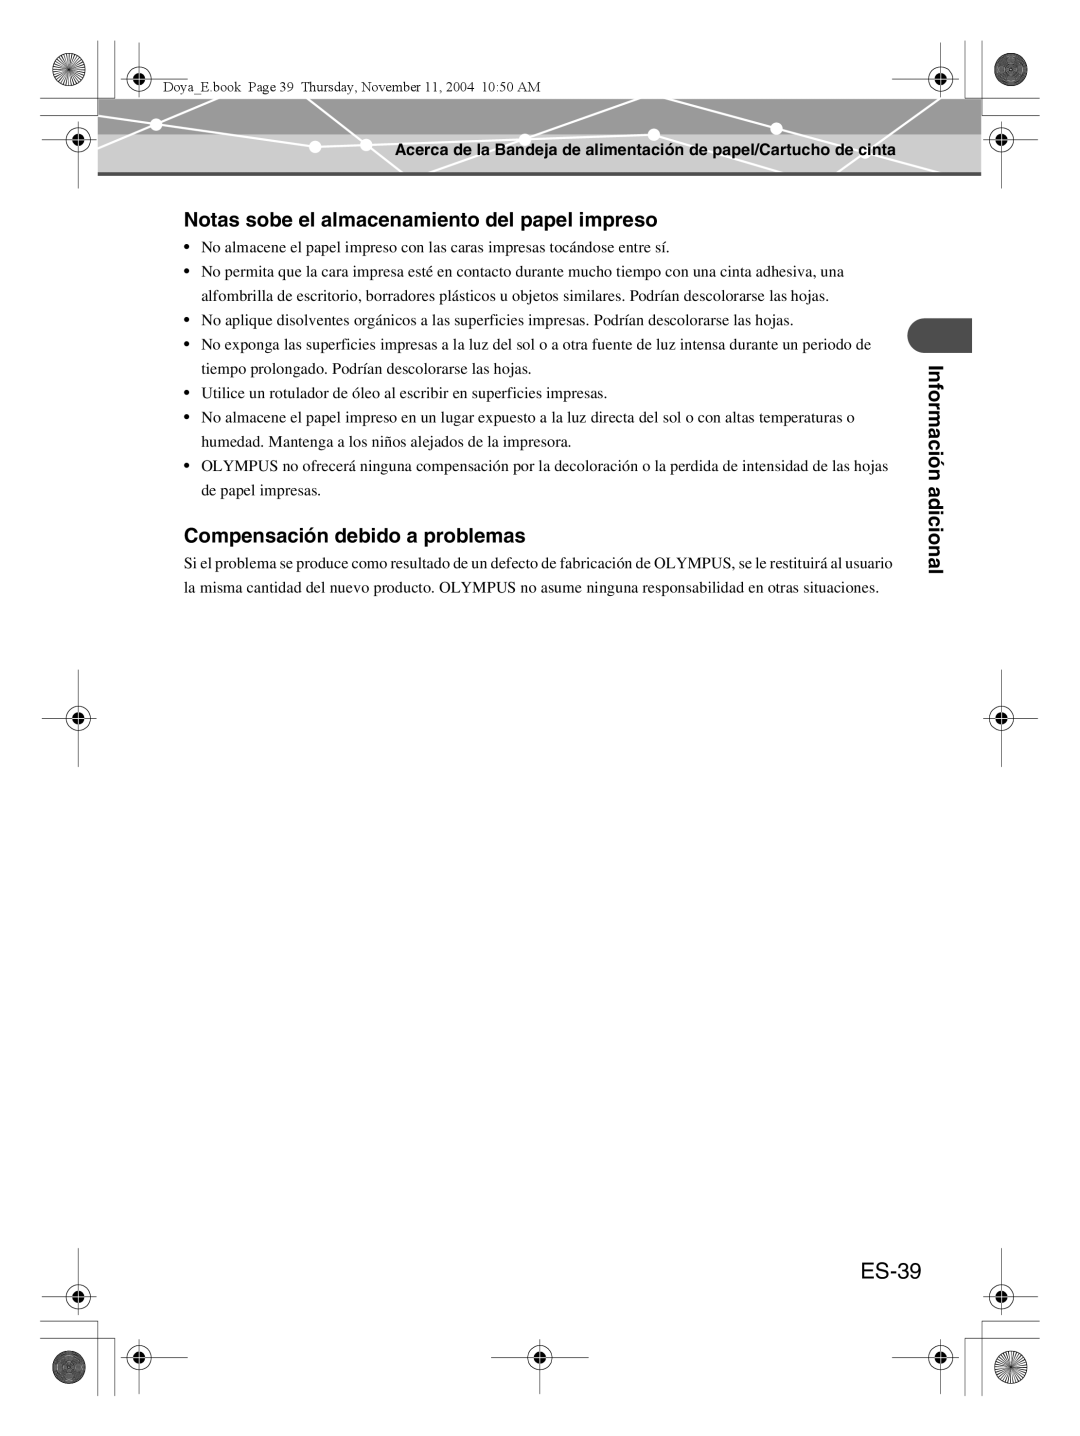 Olympus P-S100 user manual ES-39, Notas sobe el almacenamiento del papel impreso, Compensación debido a problemas 